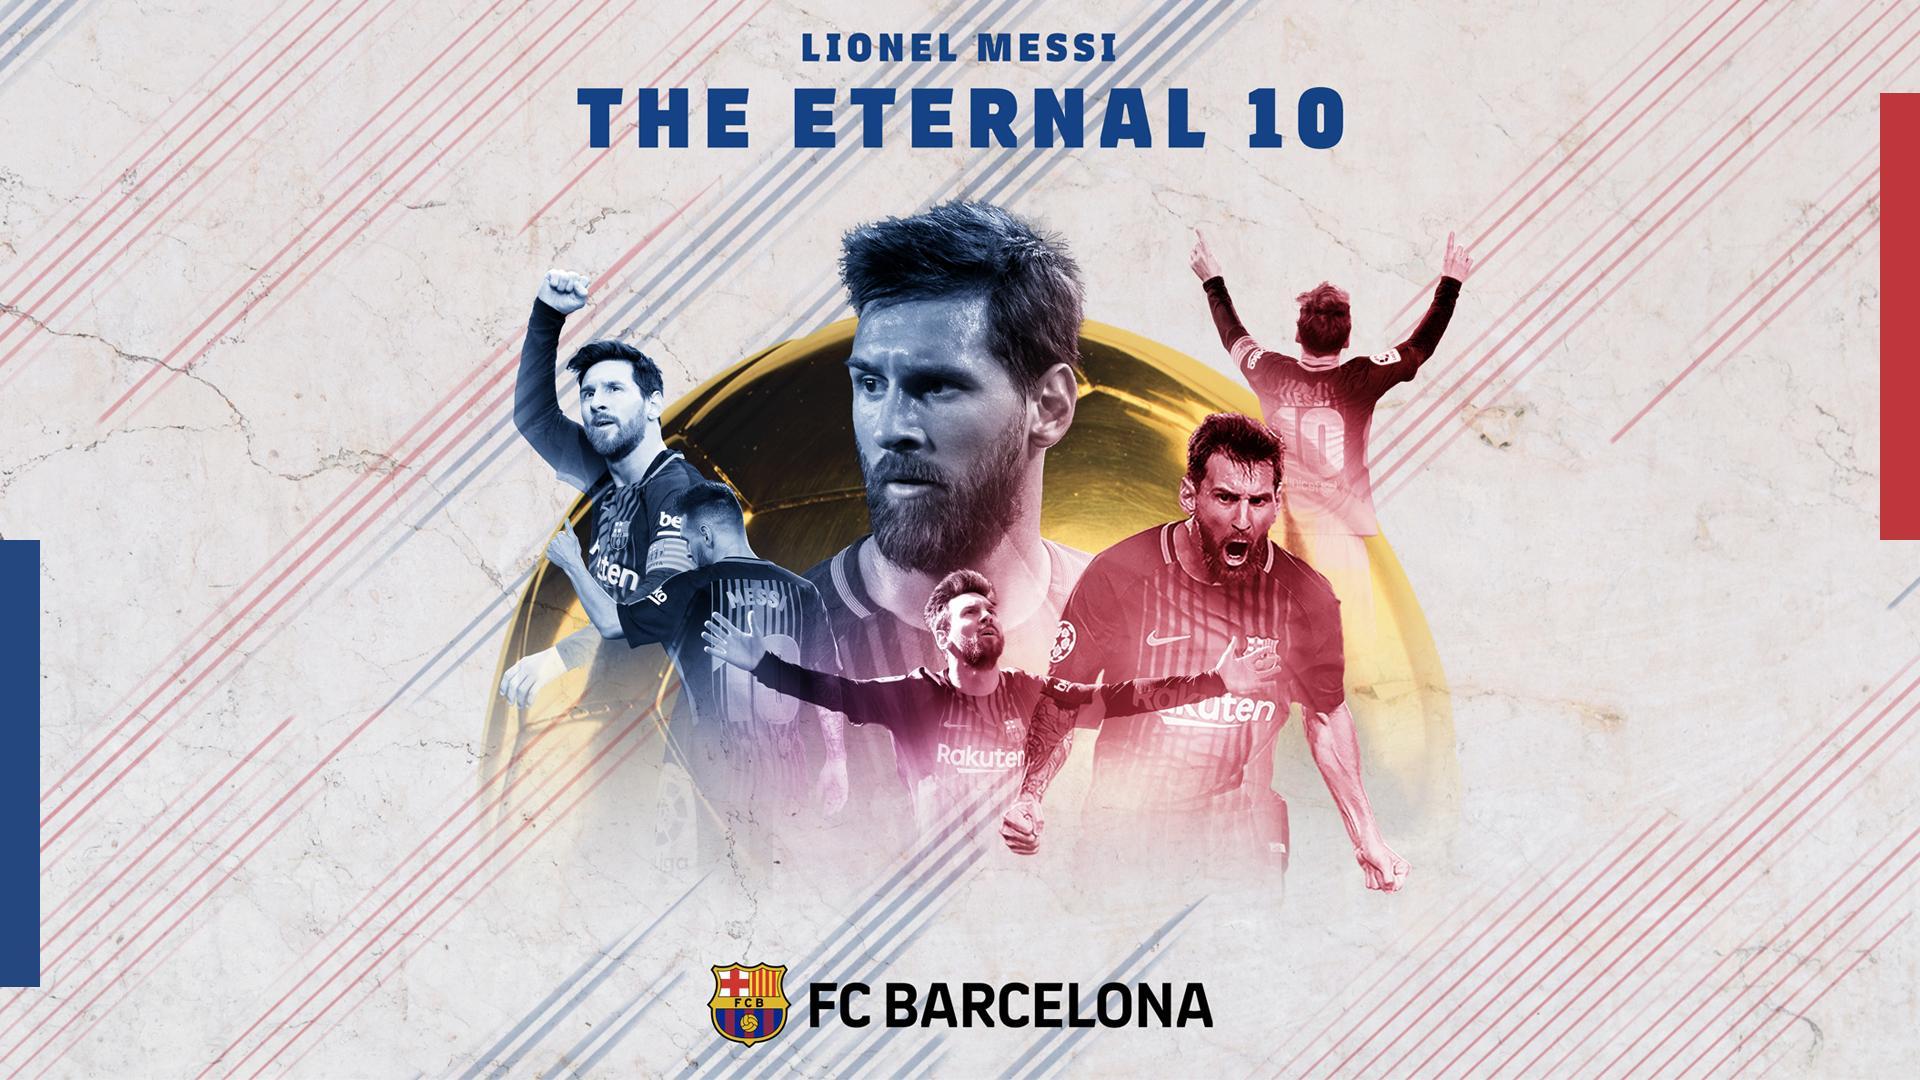 Culersça Wallpaper. FC Barcelona Official Channel